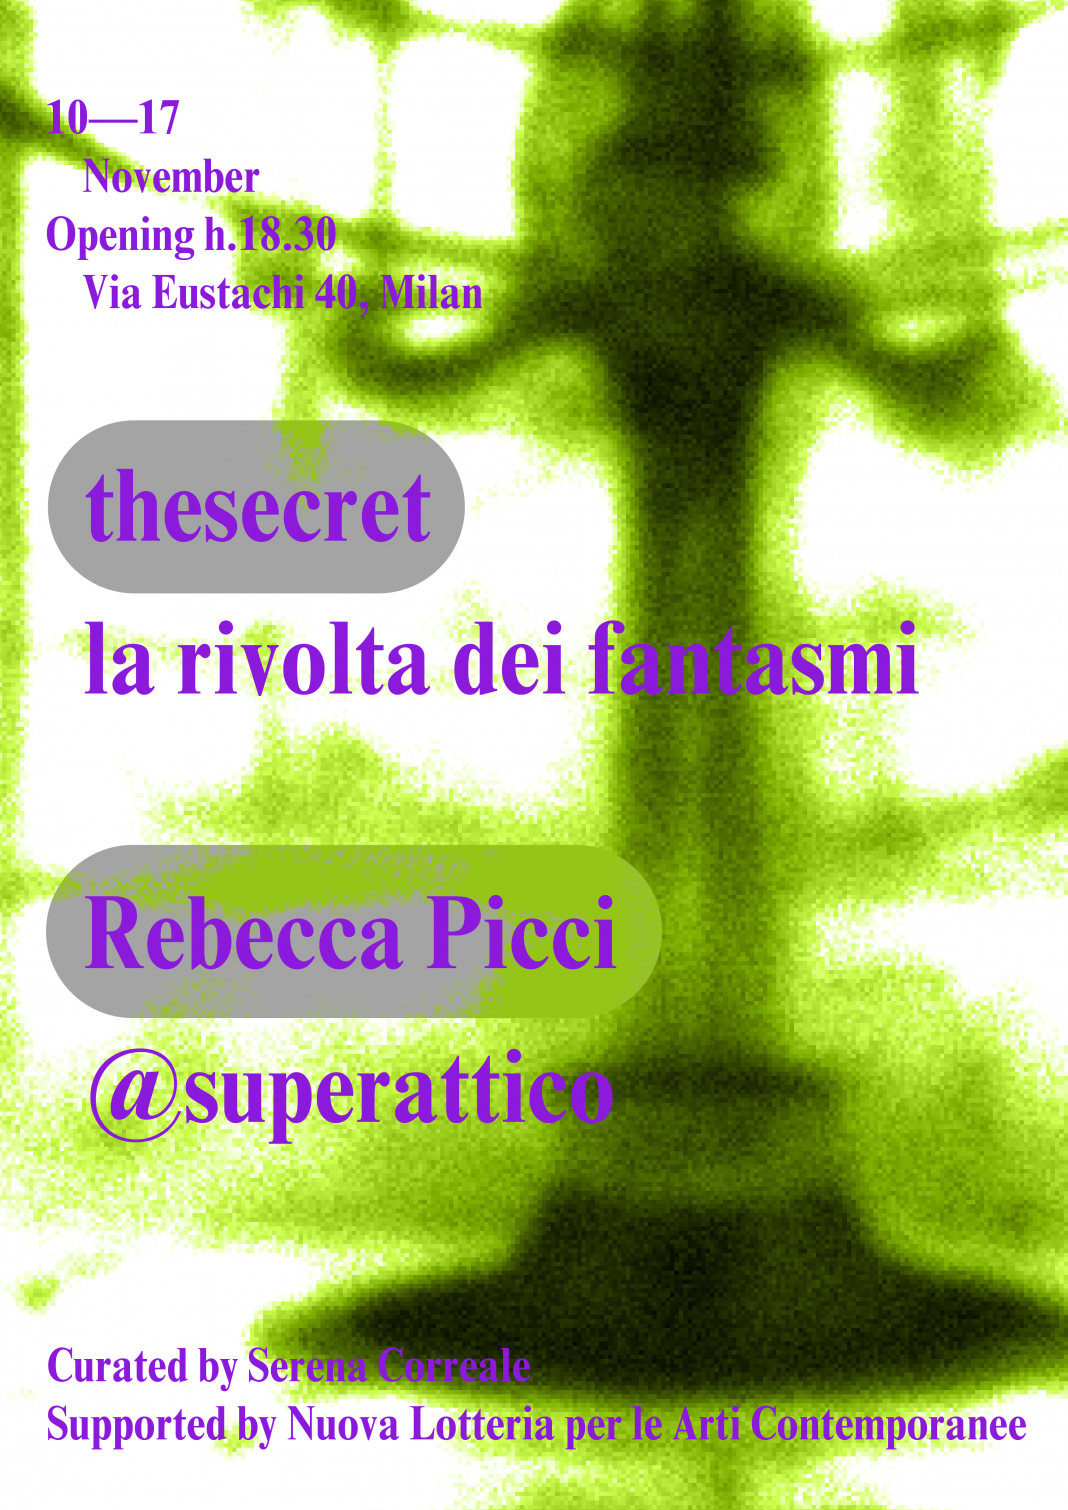 thesecret: la rivolta dei fantasmihttps://www.exibart.com/repository/media/formidable/11/img/f76/Rebecca_Picci_thesecret_poster_Tavola-disegno-1_Tavola-disegno-1-1068x1510.png